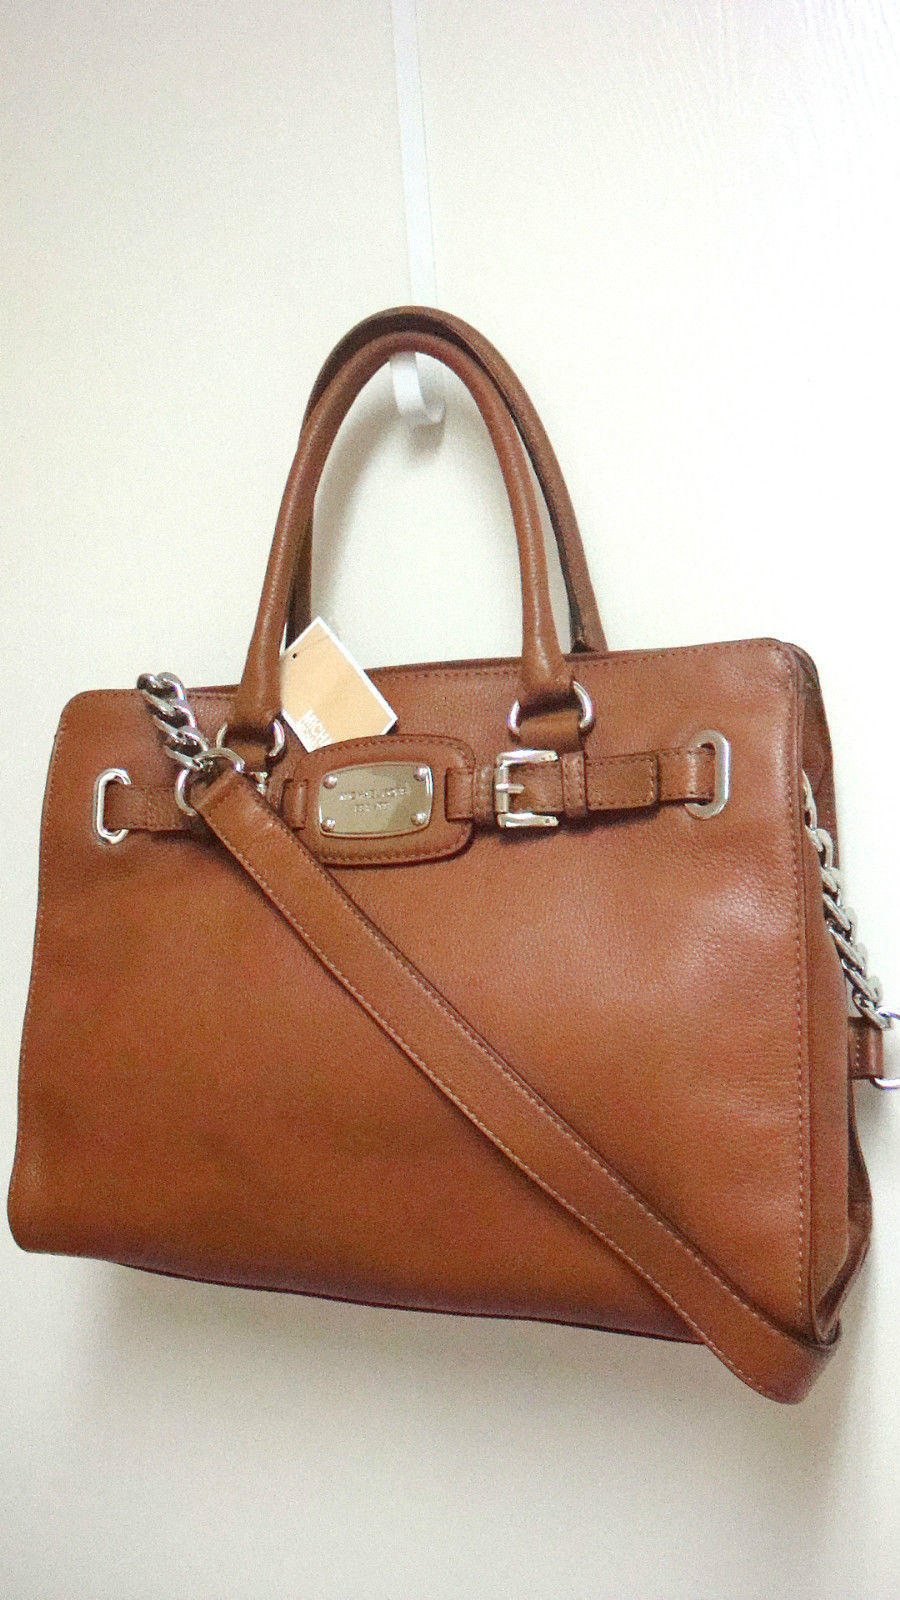 michael kors brown leather bag